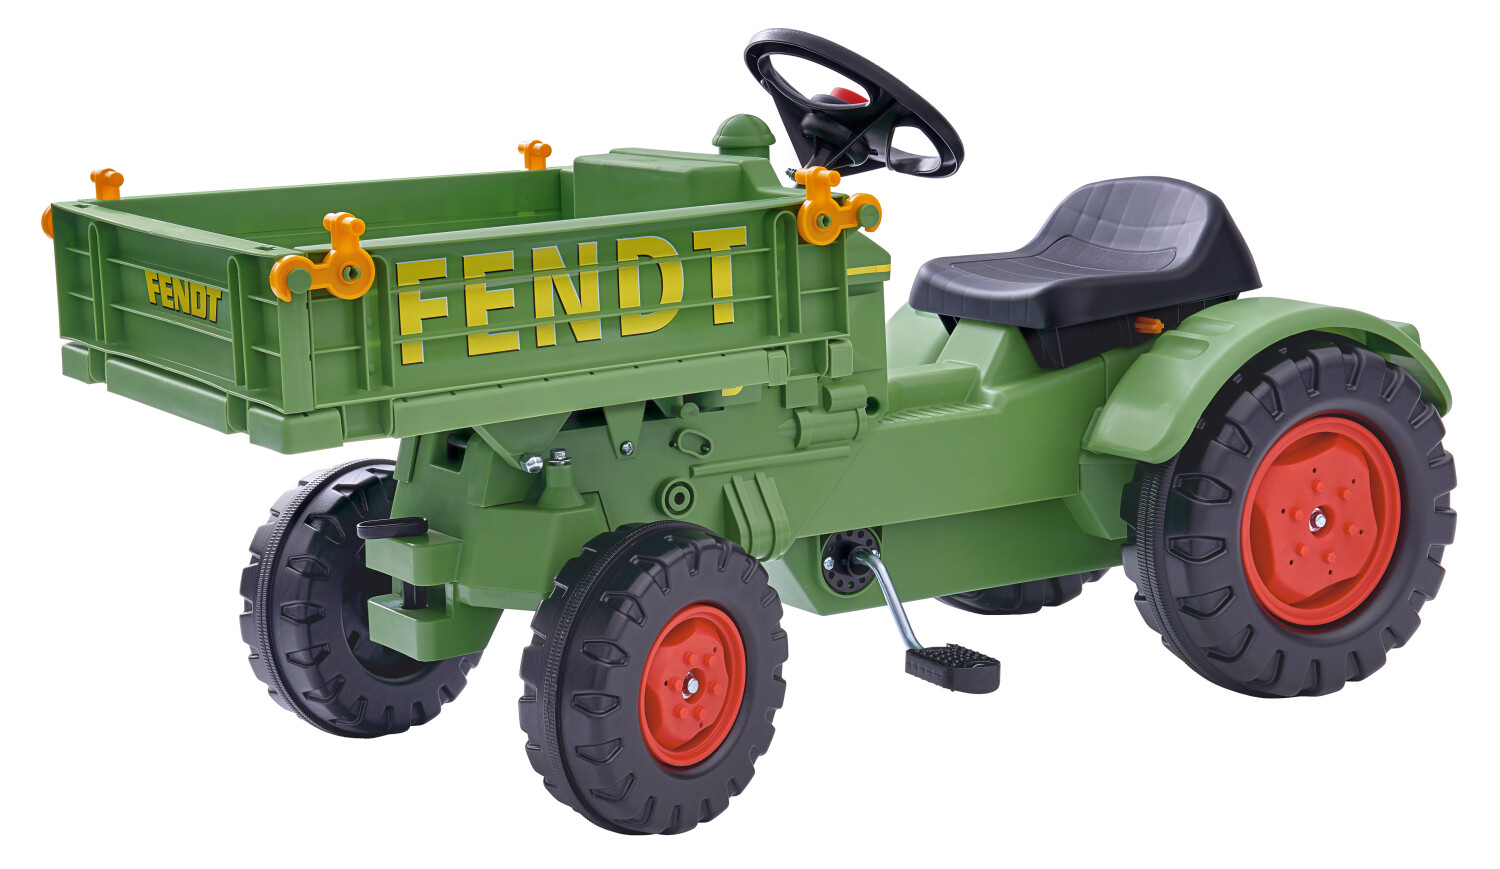 Afbeelding BIG Fendt Tool tractor door Tuinadvies.be